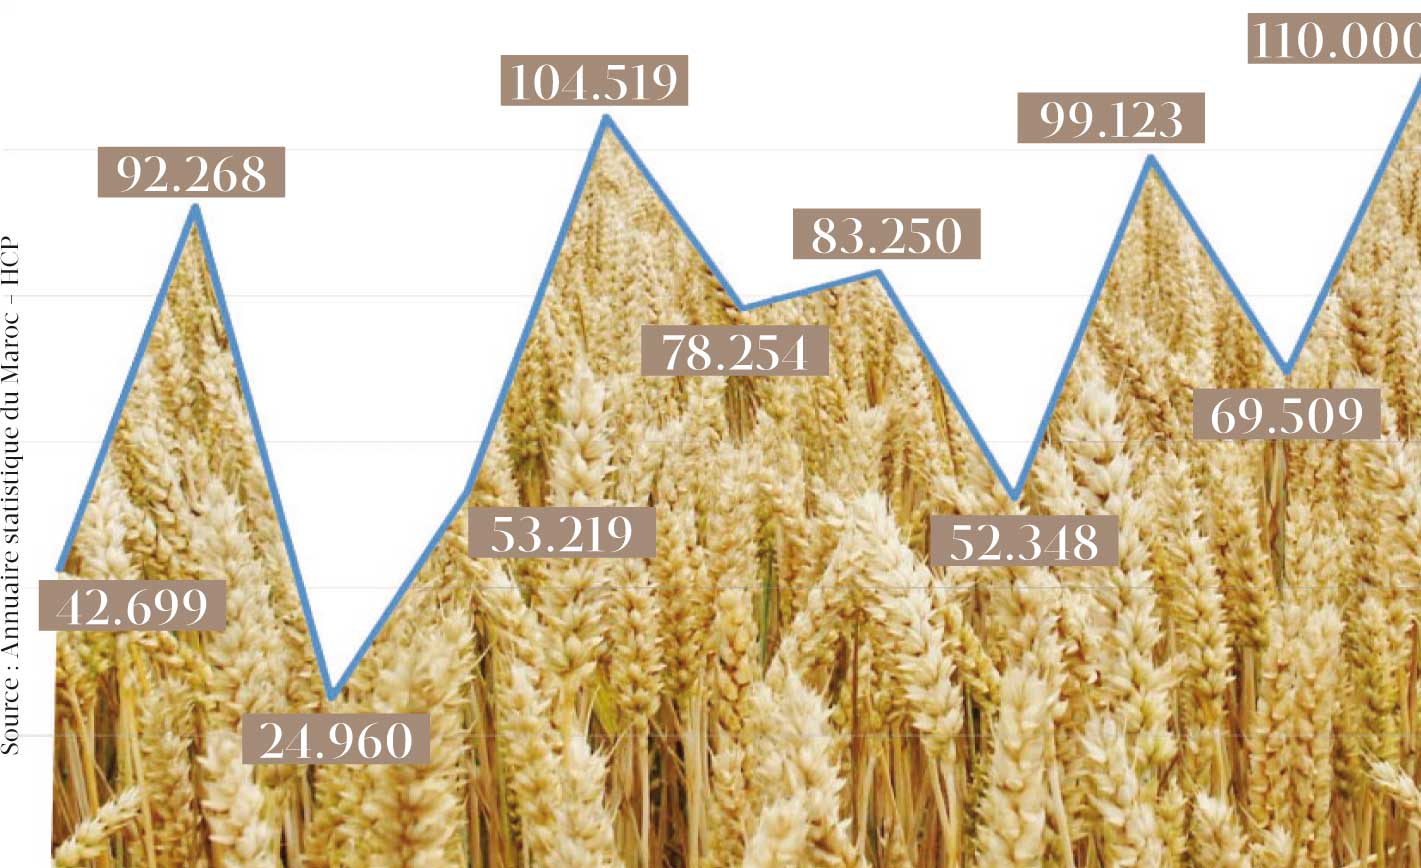 Aziz Akhannouch annonce que la production céréalière devrait atteindre cette année le chiffre record de 110 millions de quintaux